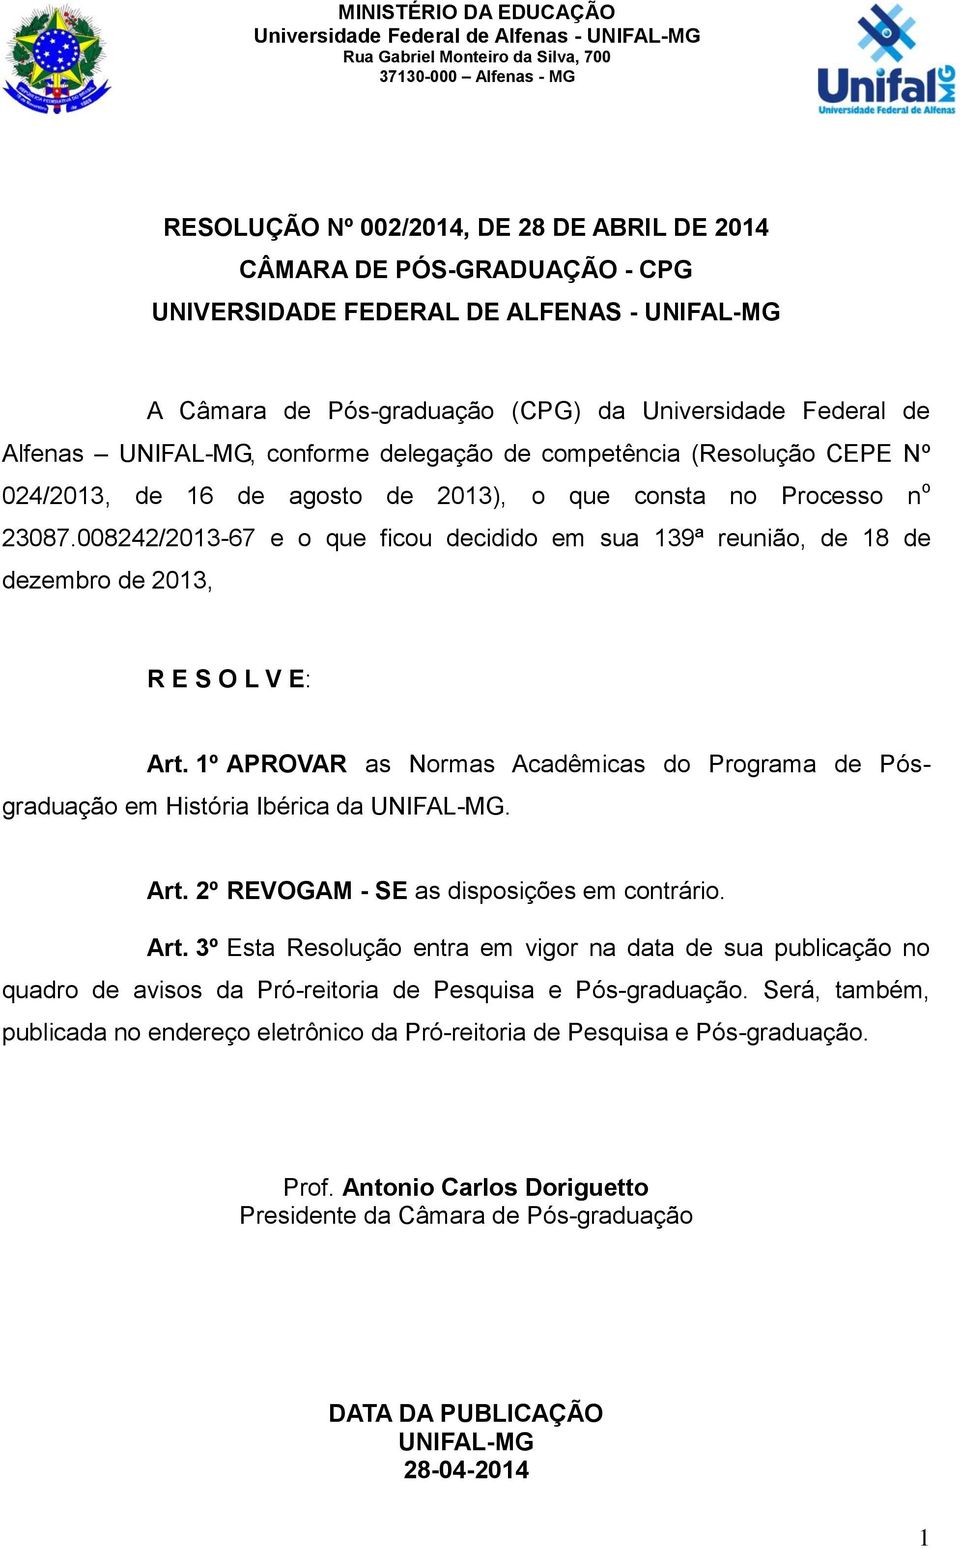 008242/2013-67 e o que ficou decidido em sua 139ª reunião, de 18 de dezembro de 2013, R E S O L V E: Art. 1º APROVAR as Normas Acadêmicas do Programa de Pósgraduação em História Ibérica da UNIFAL-MG.